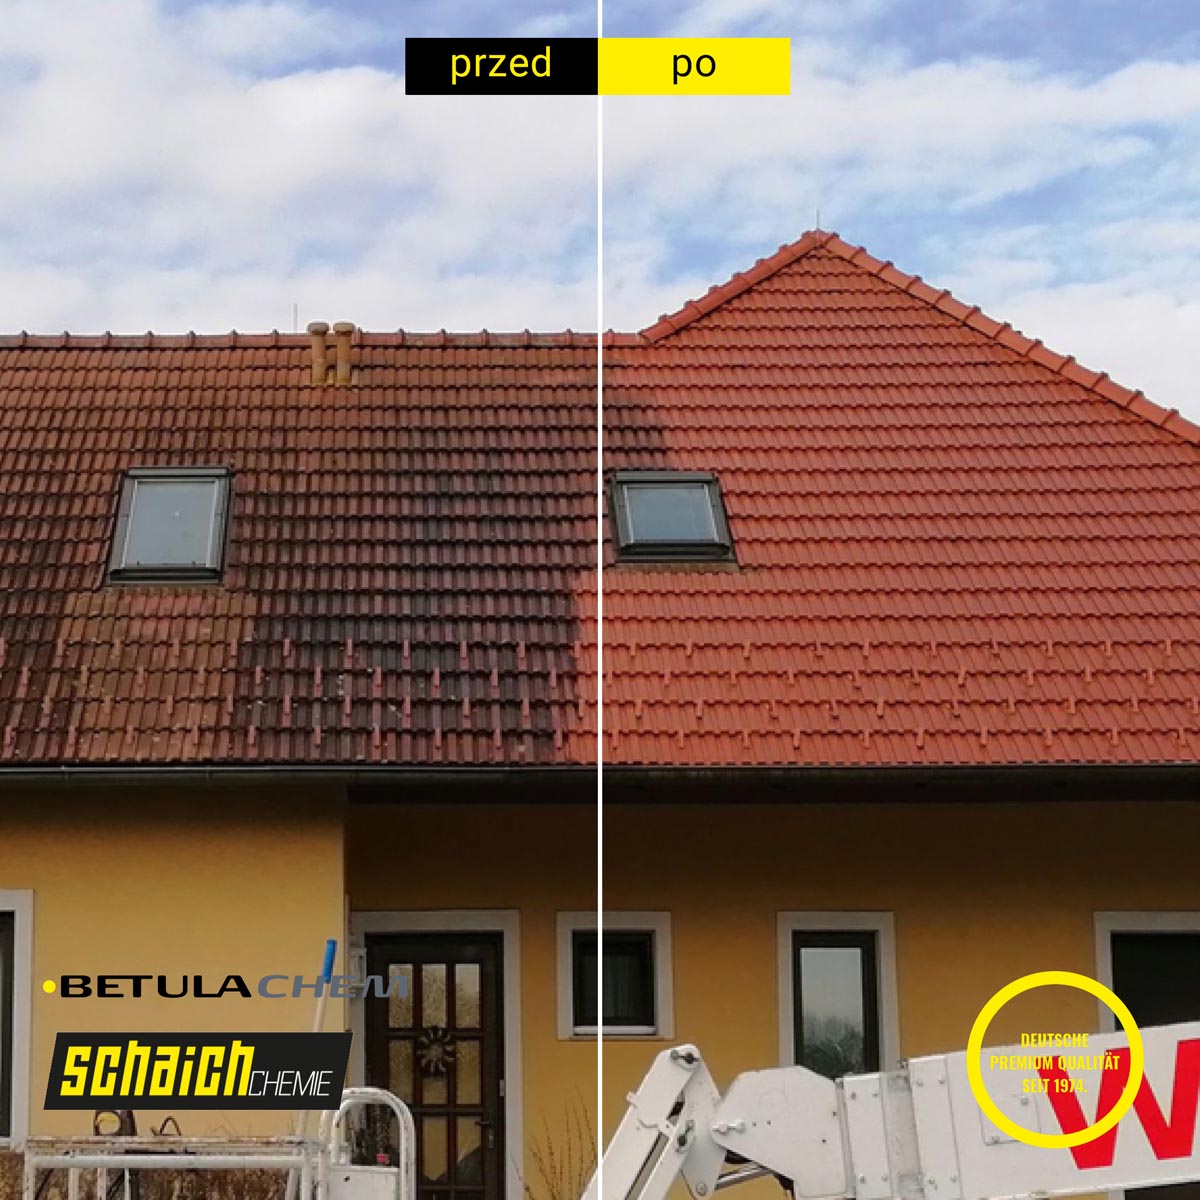 Mycie dachu z wykorzystaniem środków Schaich Chemie - efekt przed i po